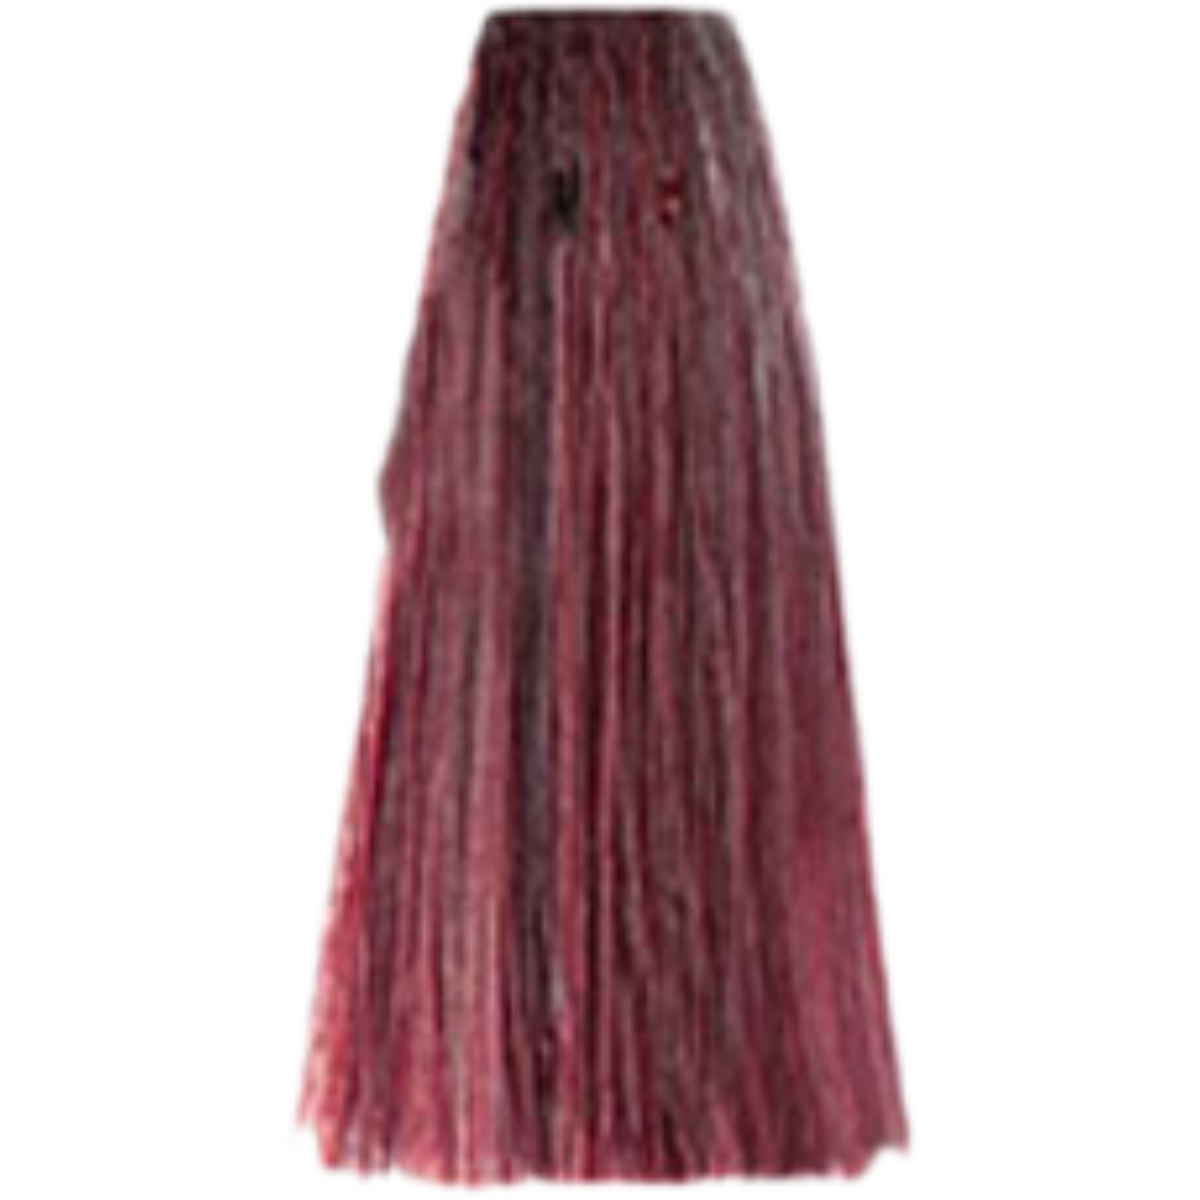 צבע שיער 7.62 RED VIOLET BLONDE פארמויטה FarmaVita צבע לשיער 100 גרם